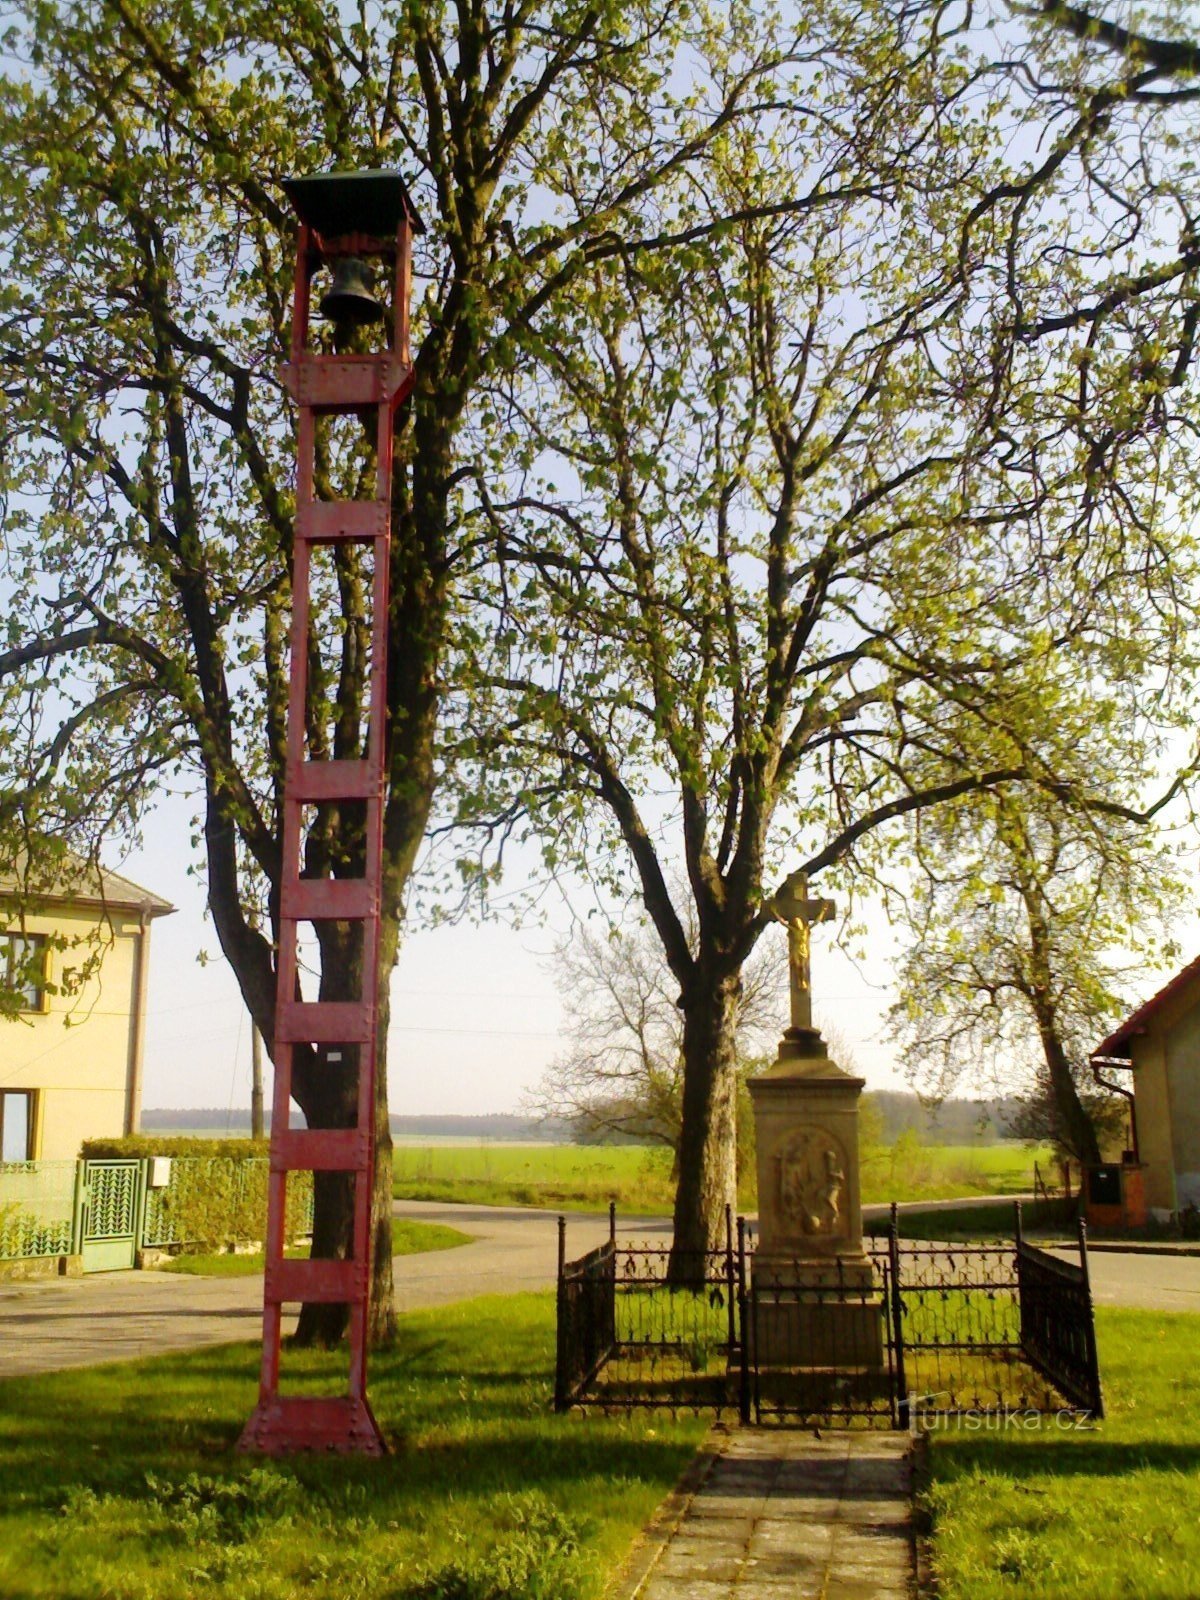 プール - 鐘のある磔刑の記念碑